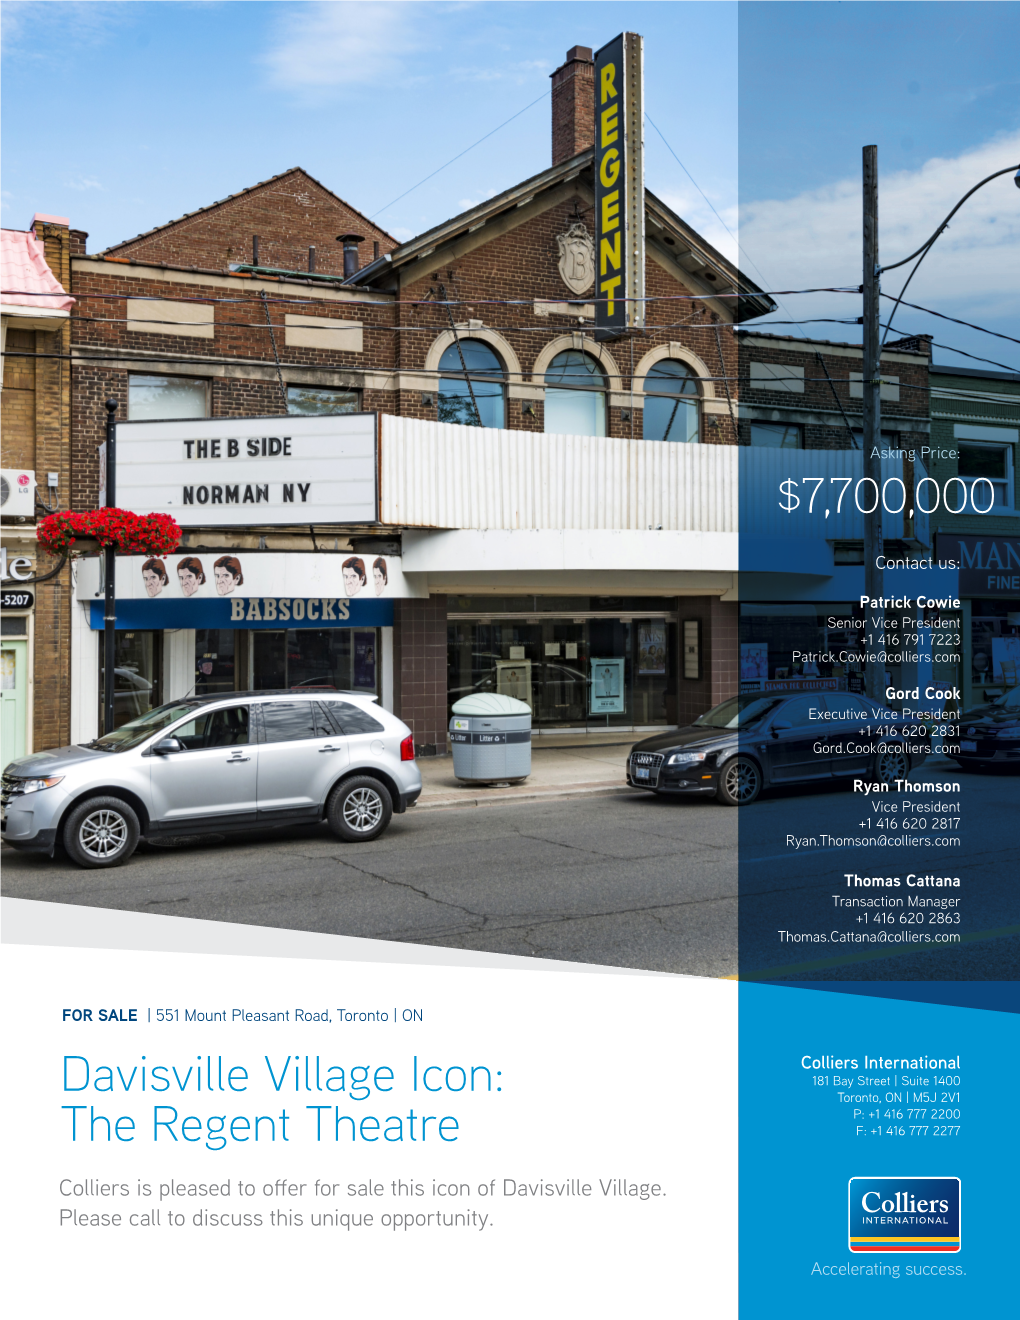 Davisville Village Icon: the Regent Theatre $7,700,000